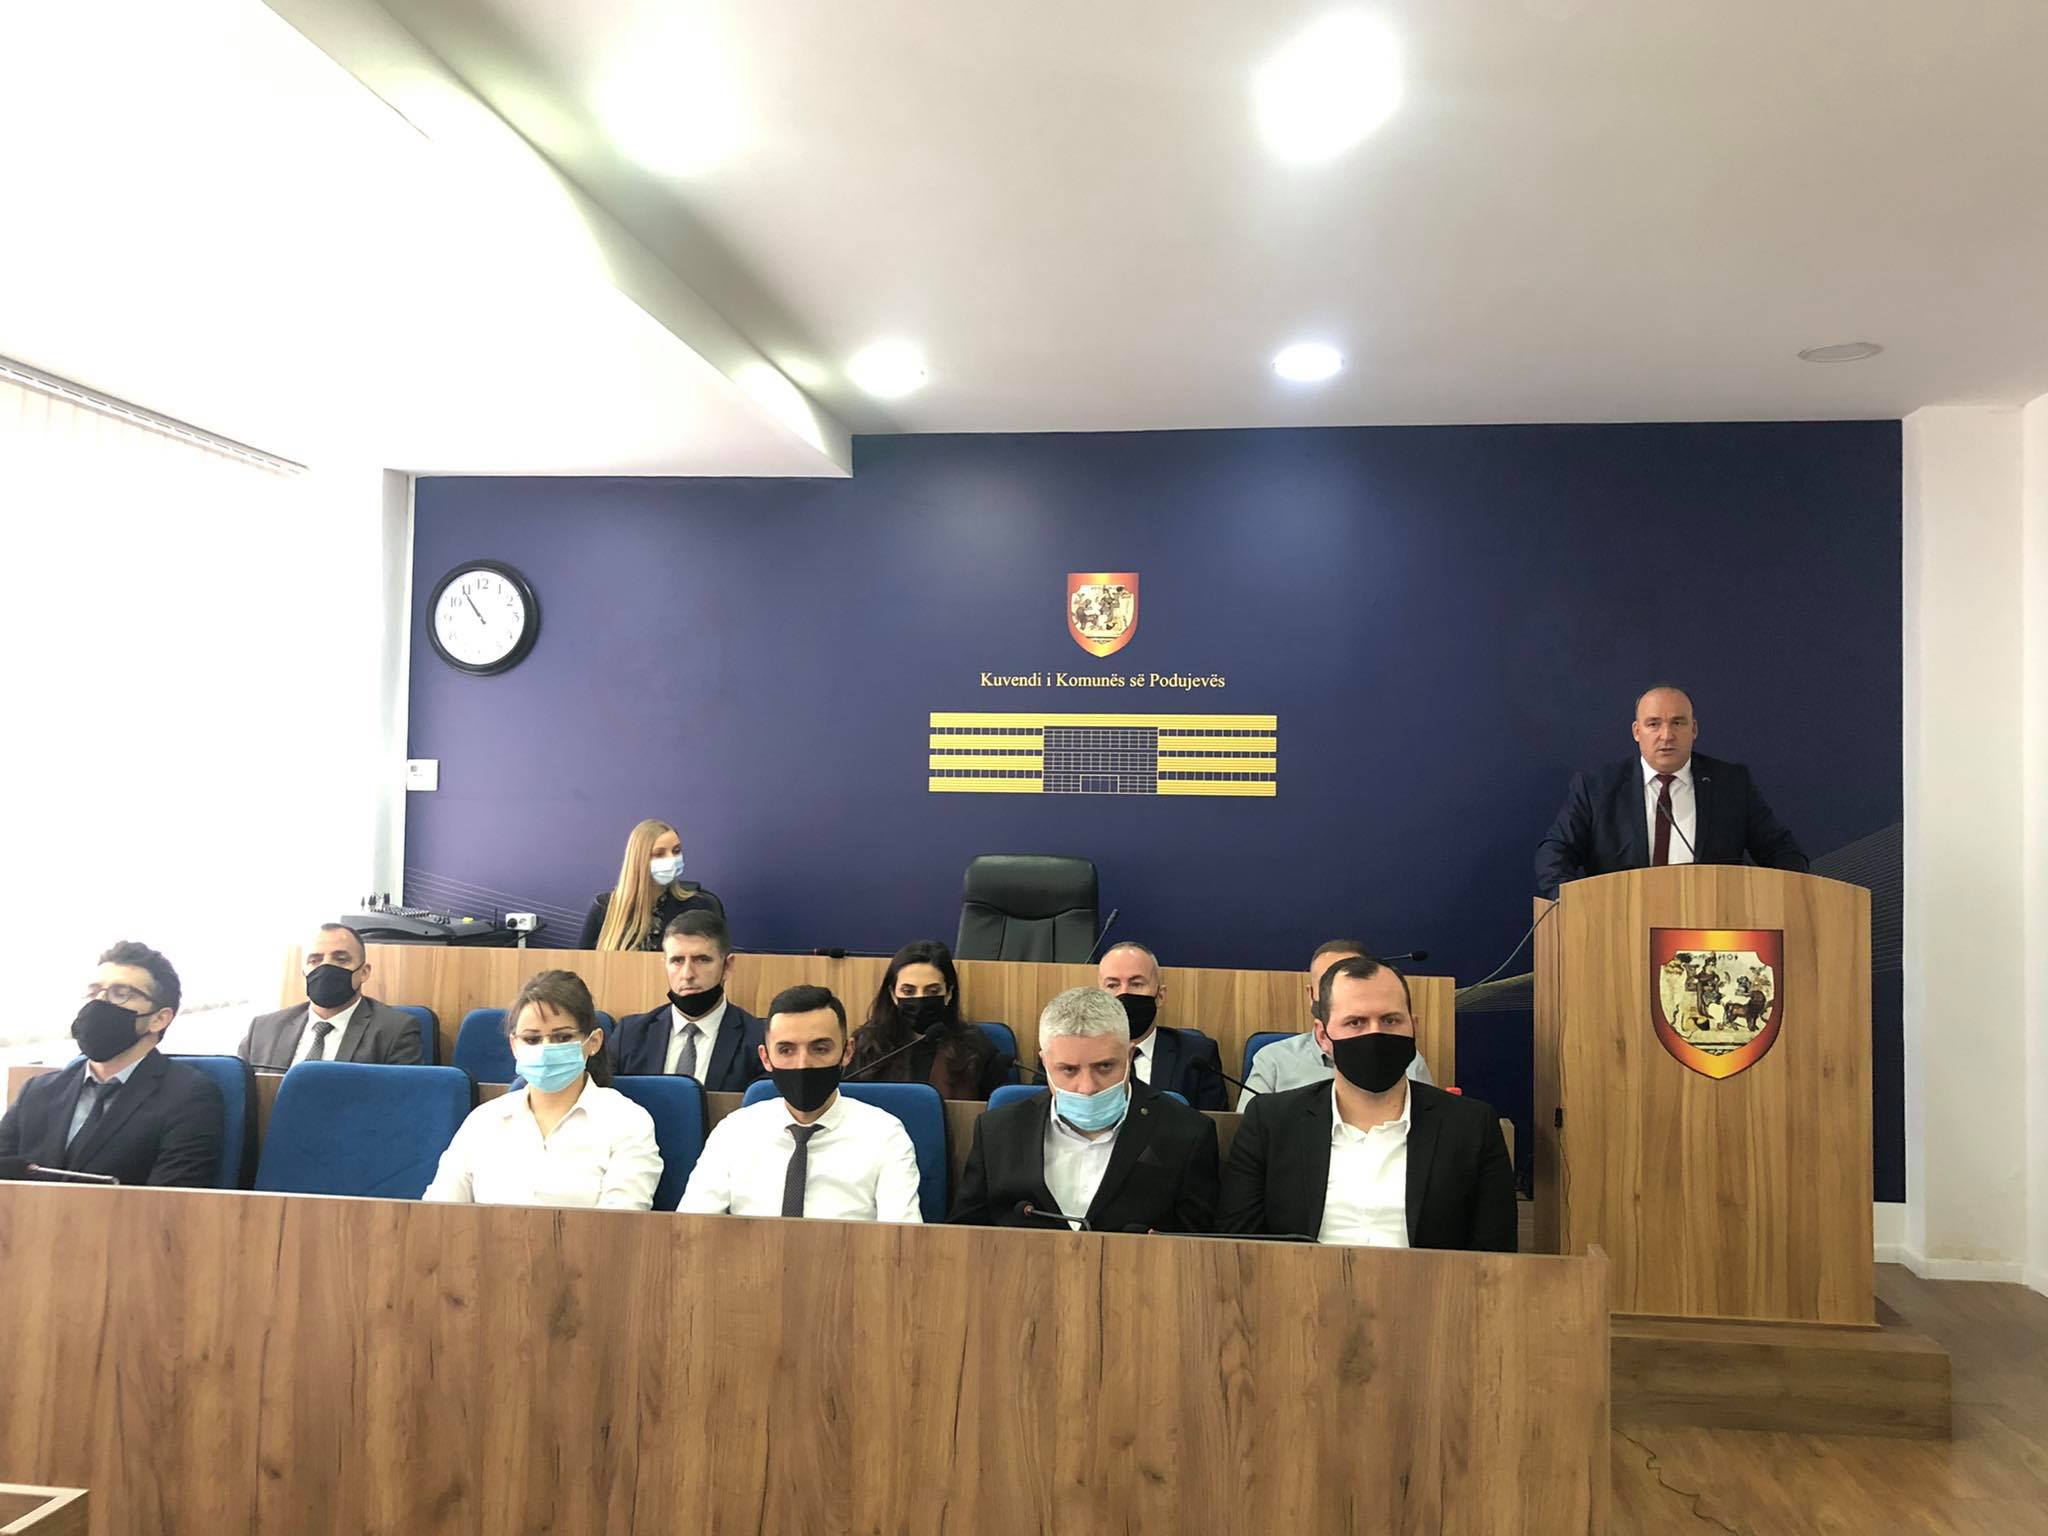  Shpejtim Bulliqi prezantoi kabinetin qeverisës të Komunës së Podujevës